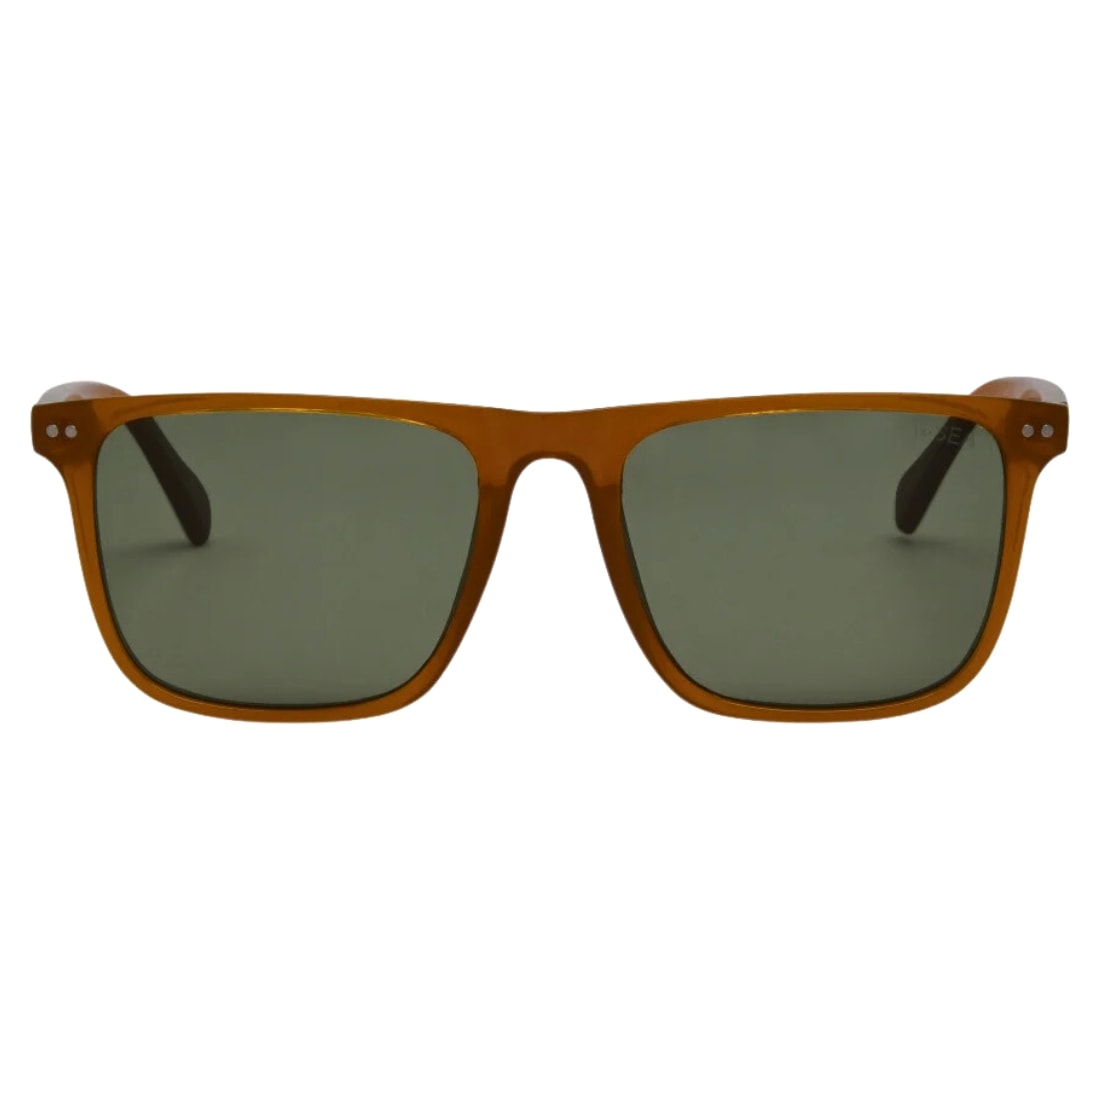 I-Sea Dax Polarised Sunglasses - Sunshine/Green Polarized Lens - Square/Rectangular Sunglasses by I-Sea